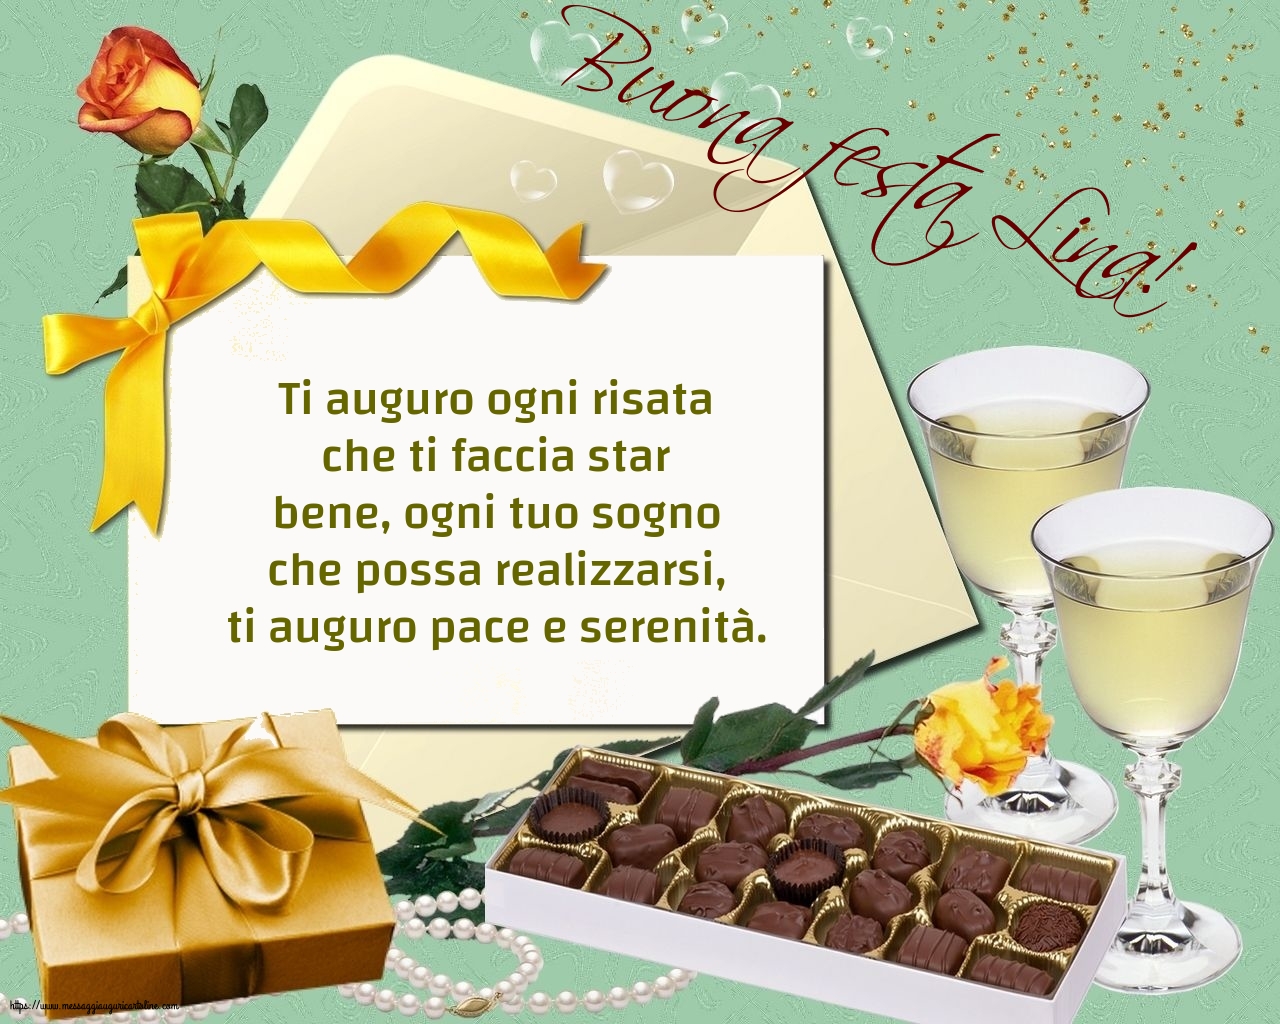 Cartoline di Sant' Angela - Buona festa Lina! - messaggiauguricartoline.com